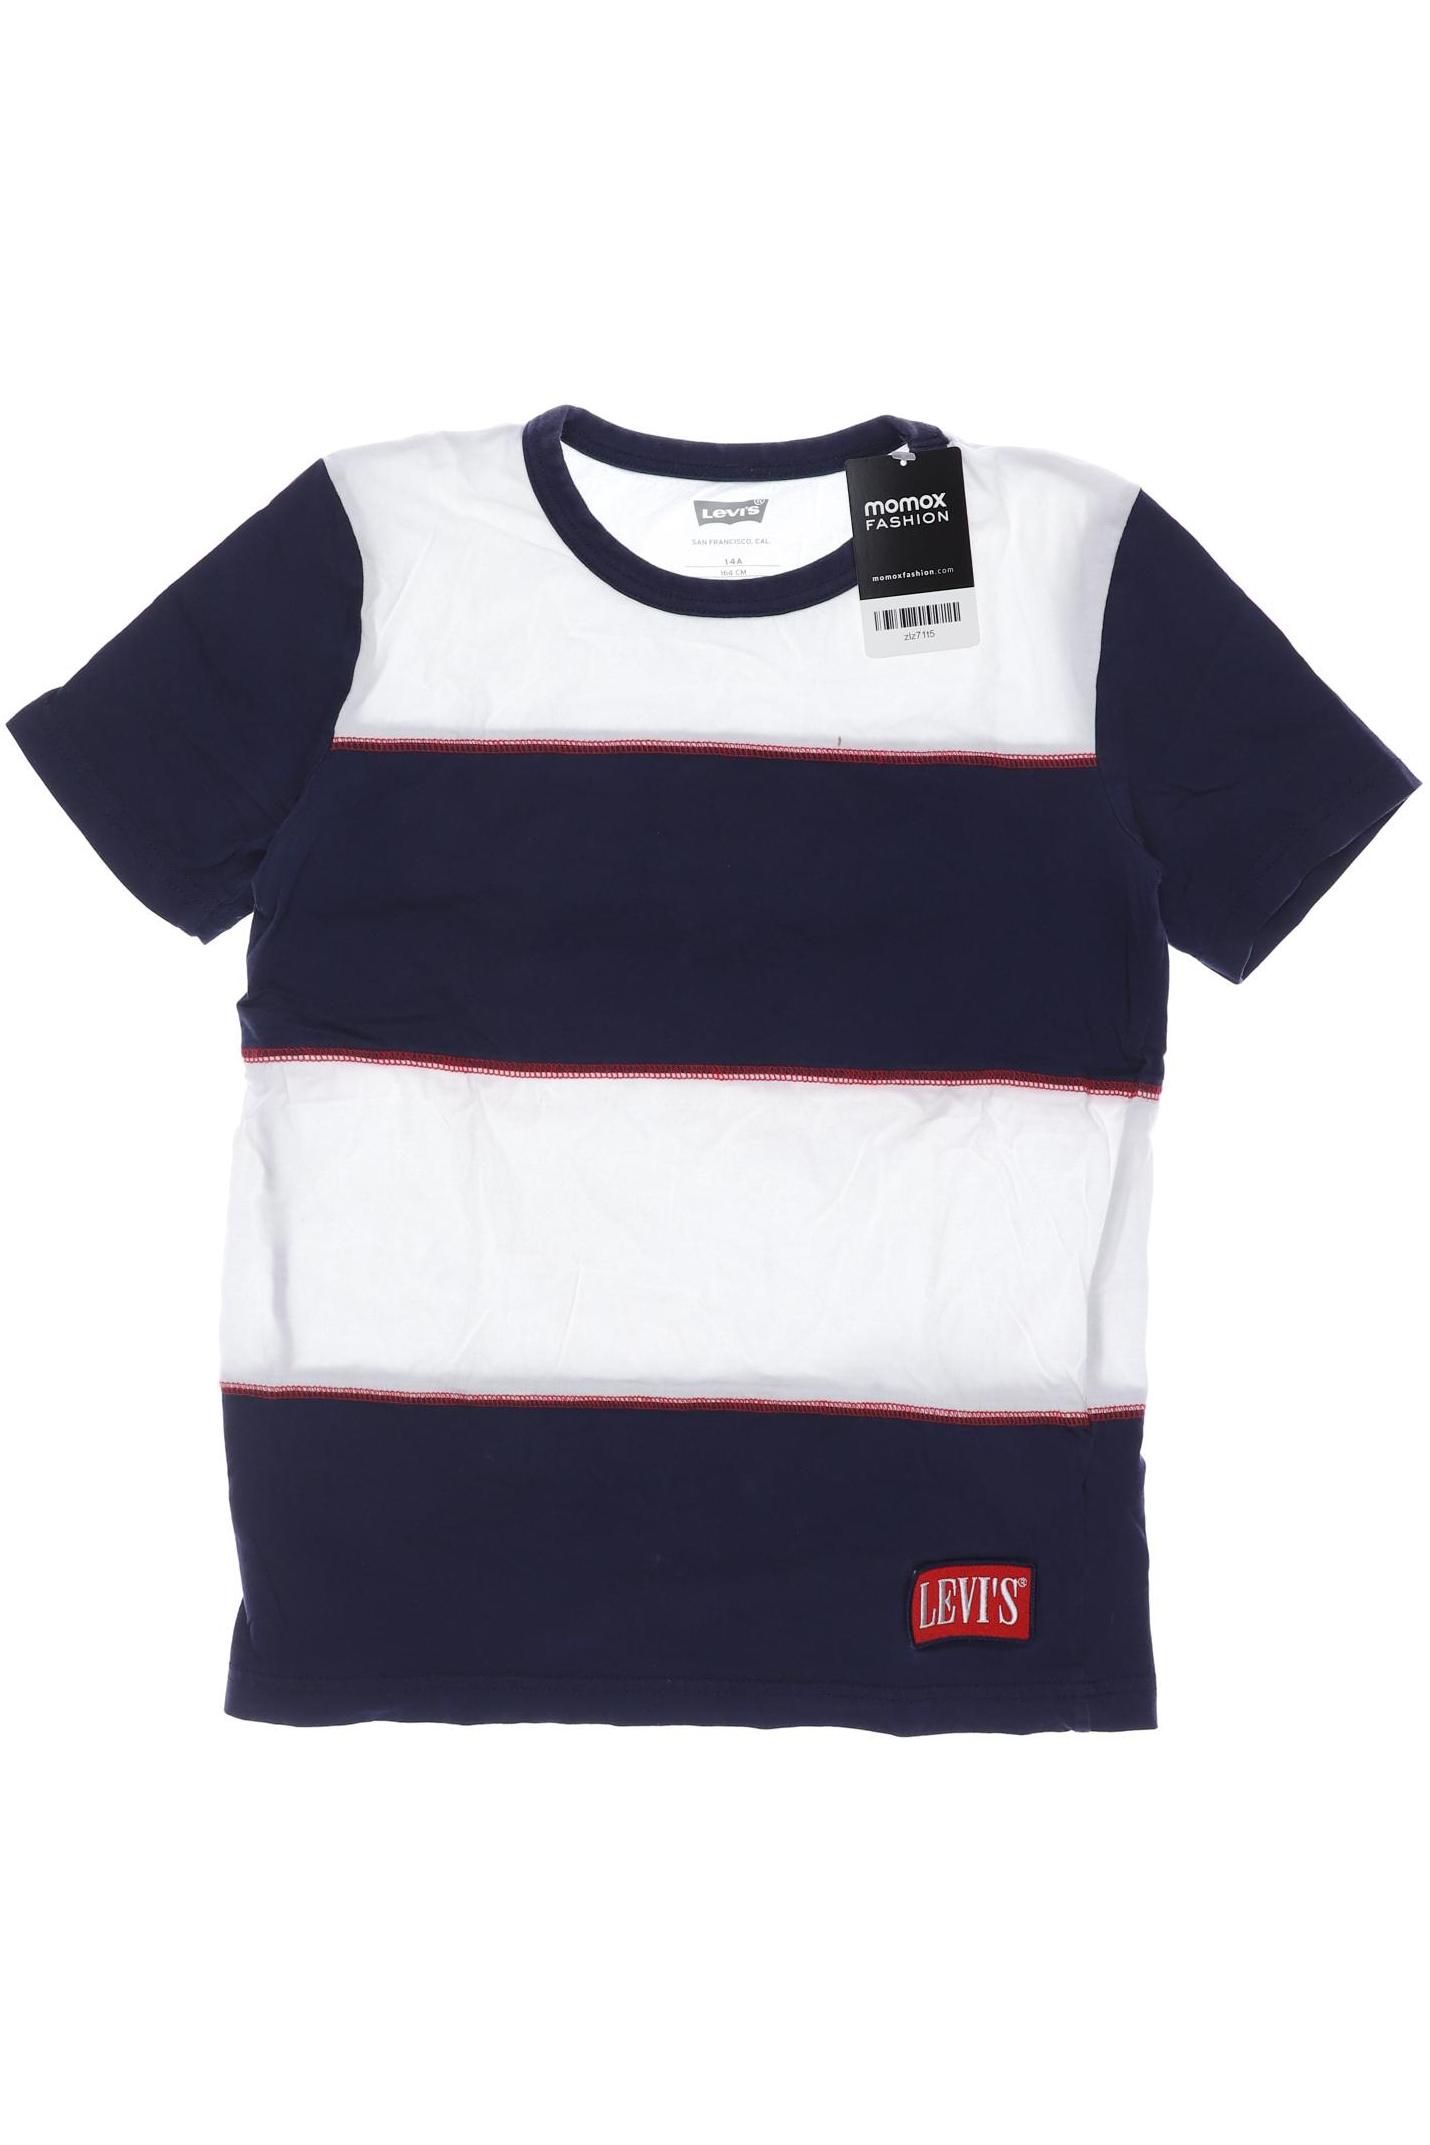 Levis Jungen T-Shirt, marineblau von Levis